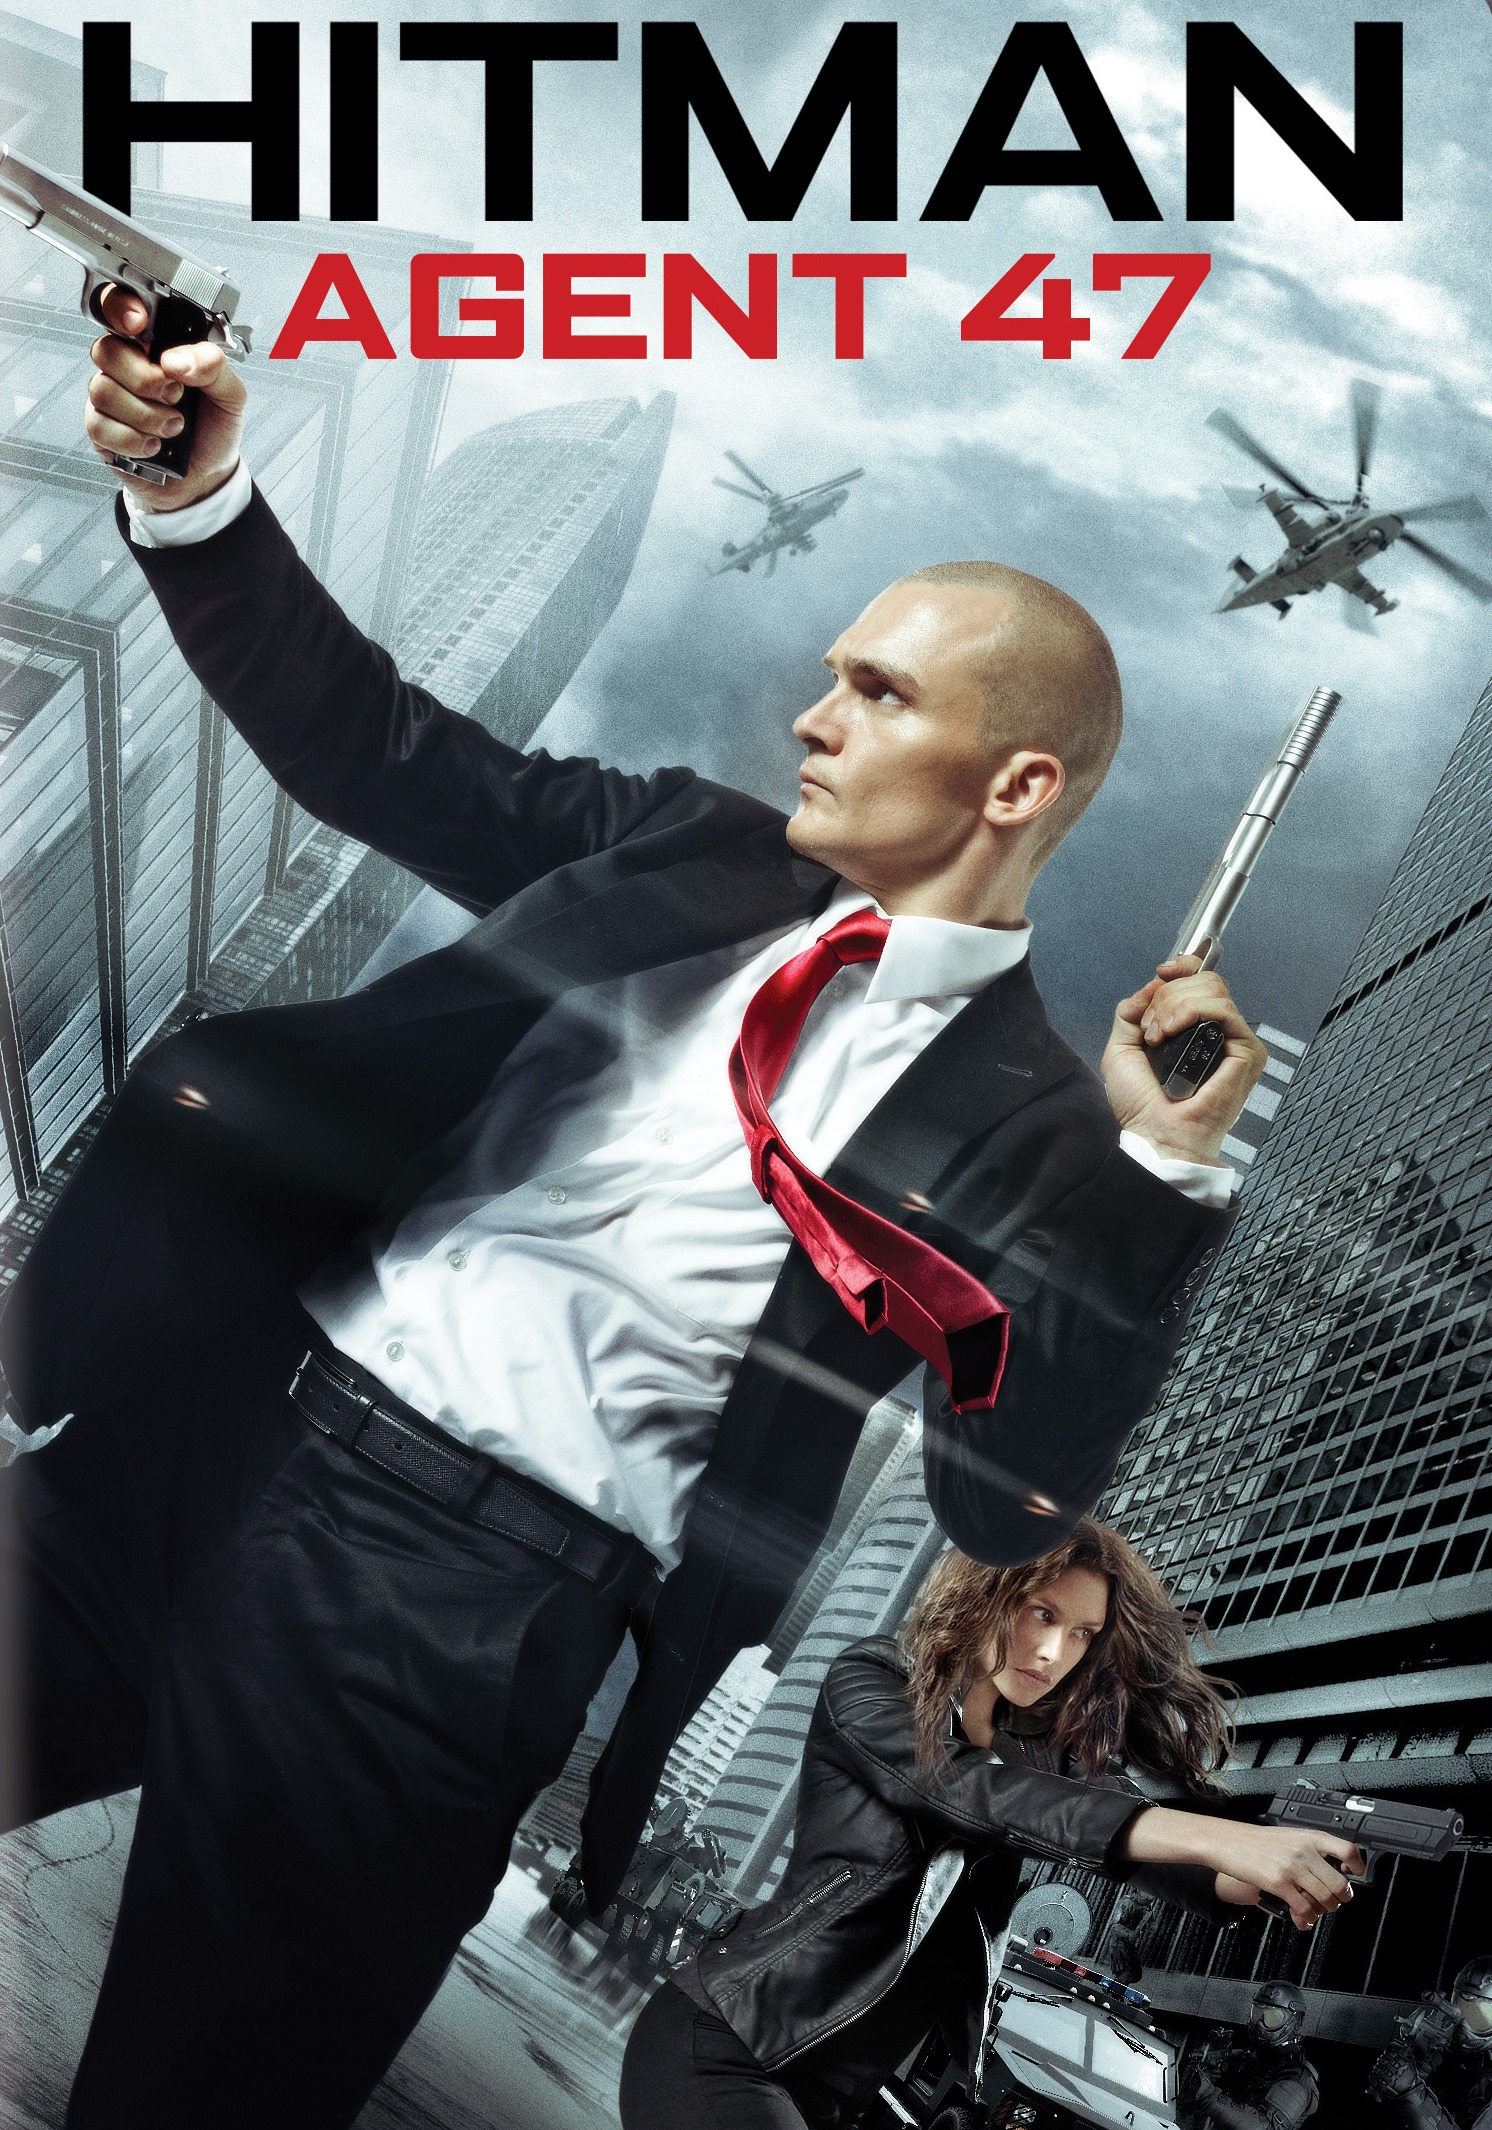 Hitman Agent 47 Dvd 15 Best Buy